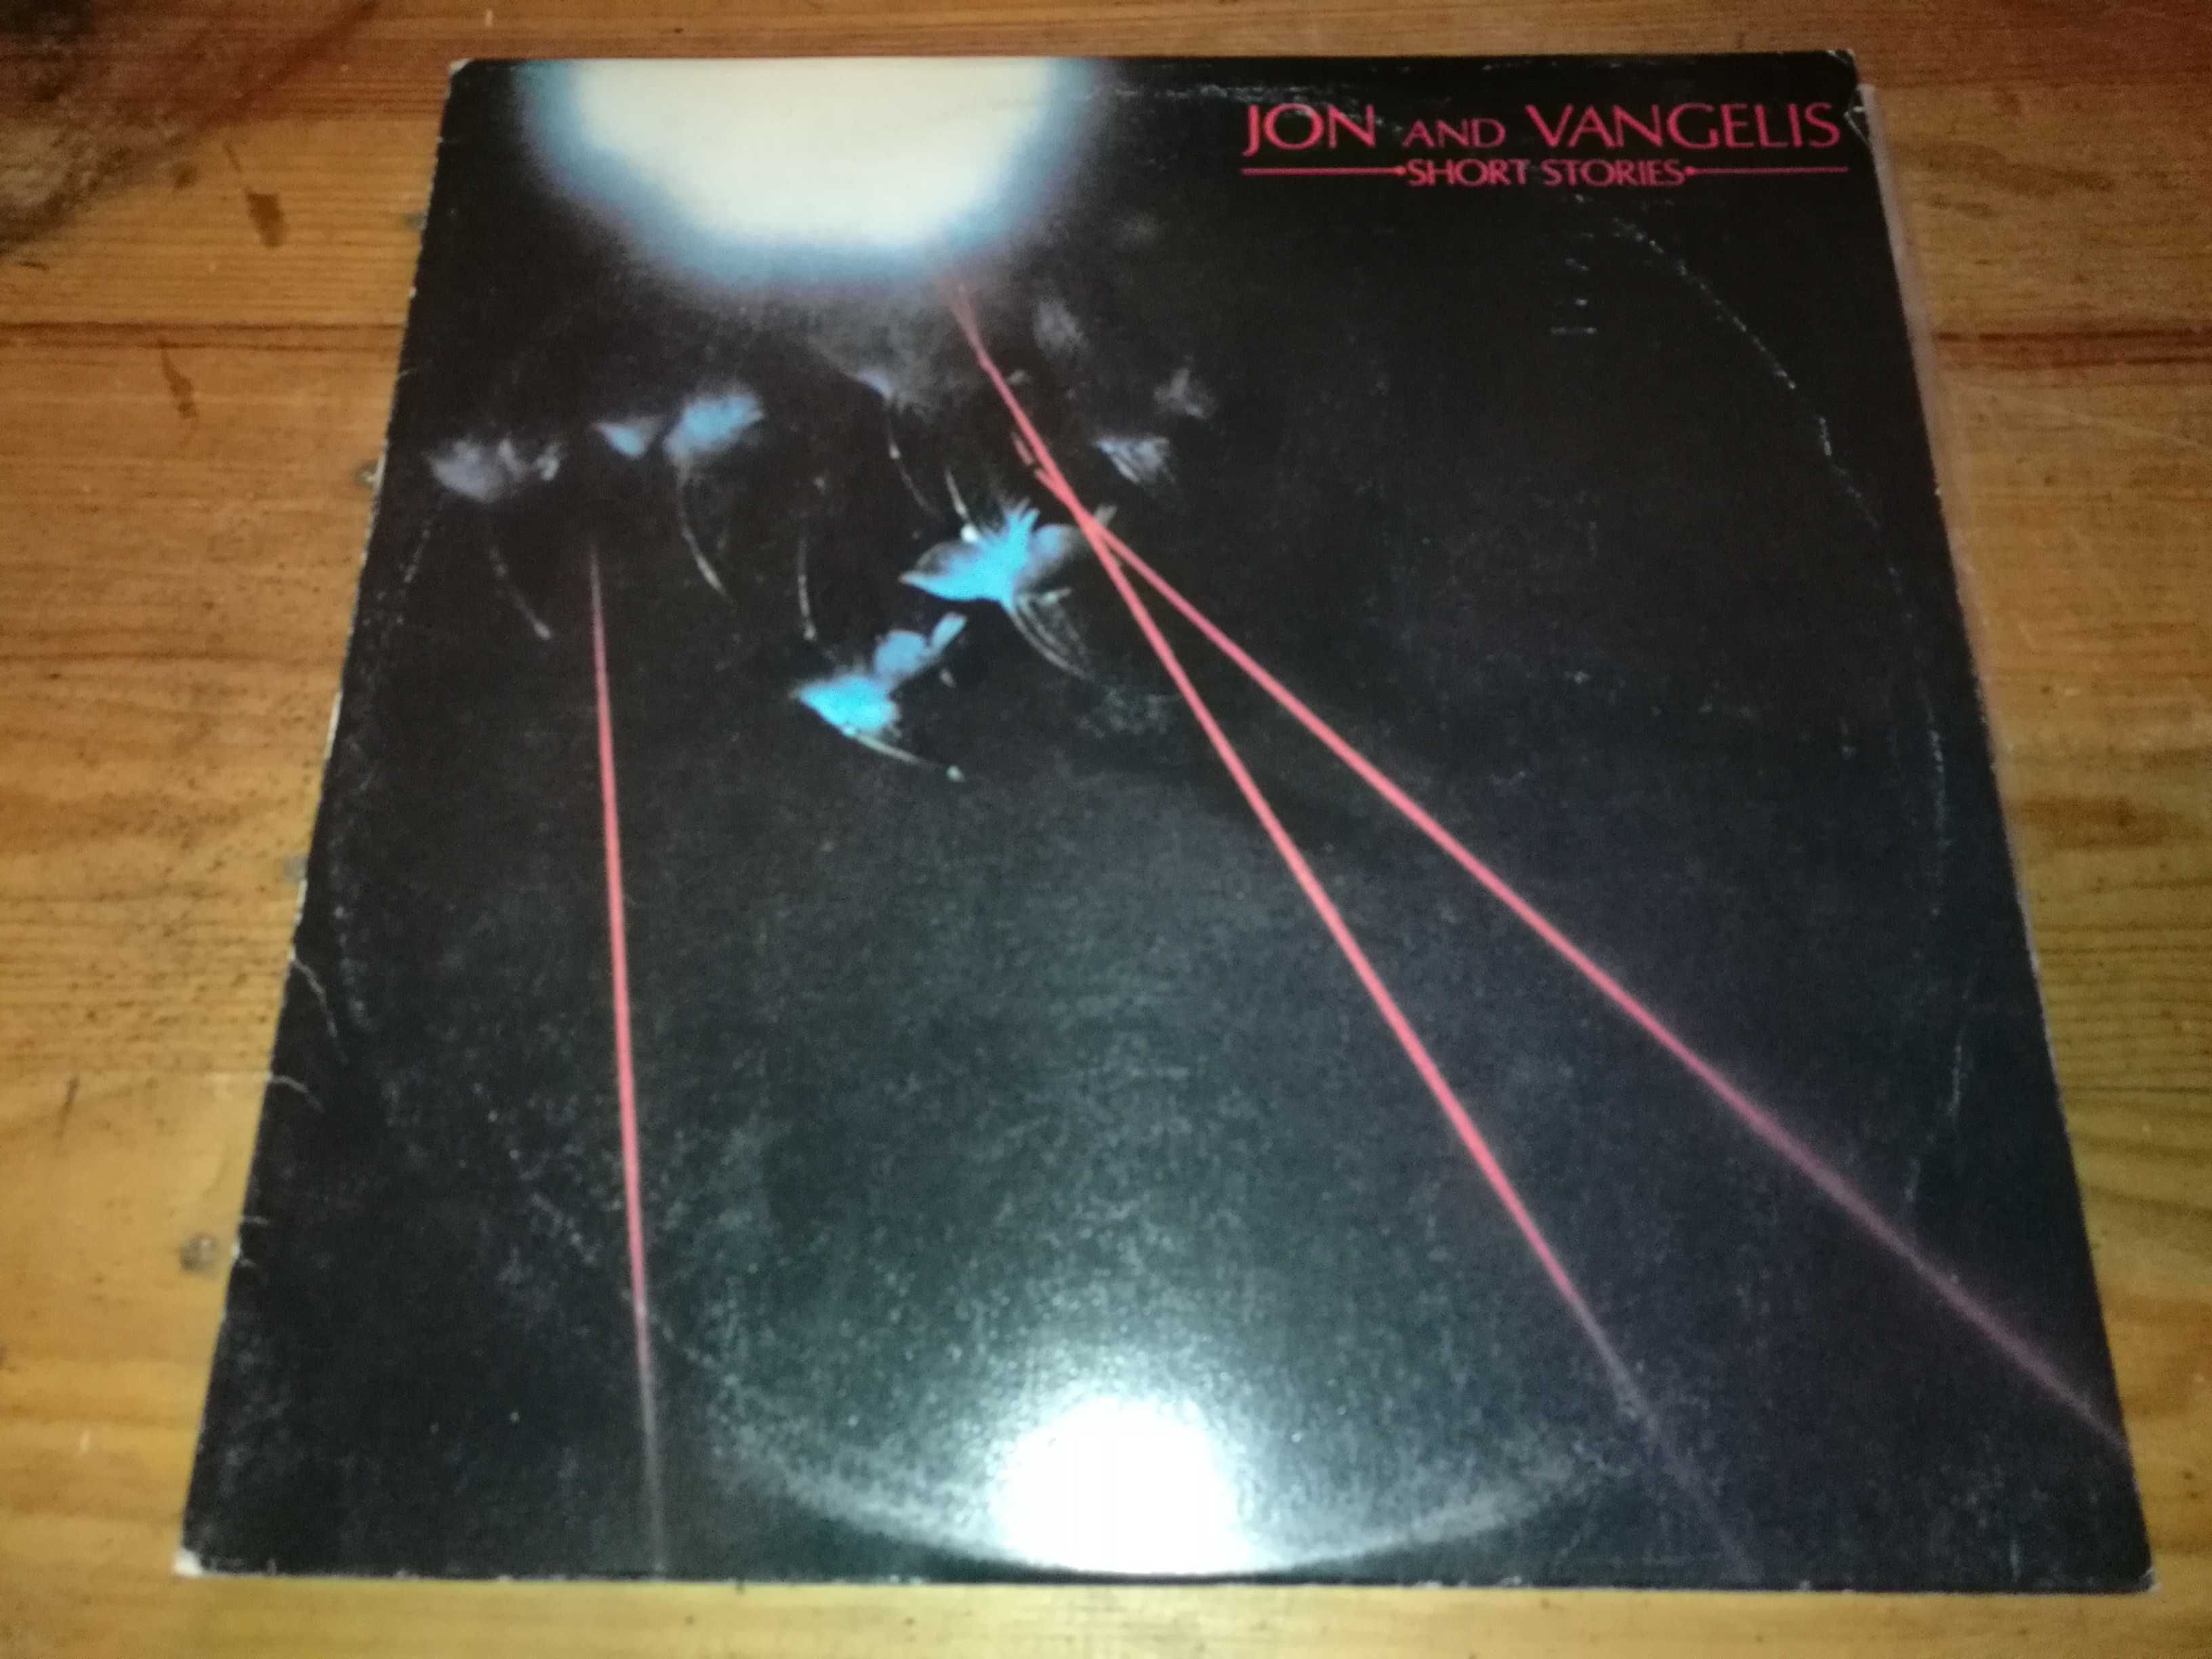 Jon and Vangelis - Short Stories LP